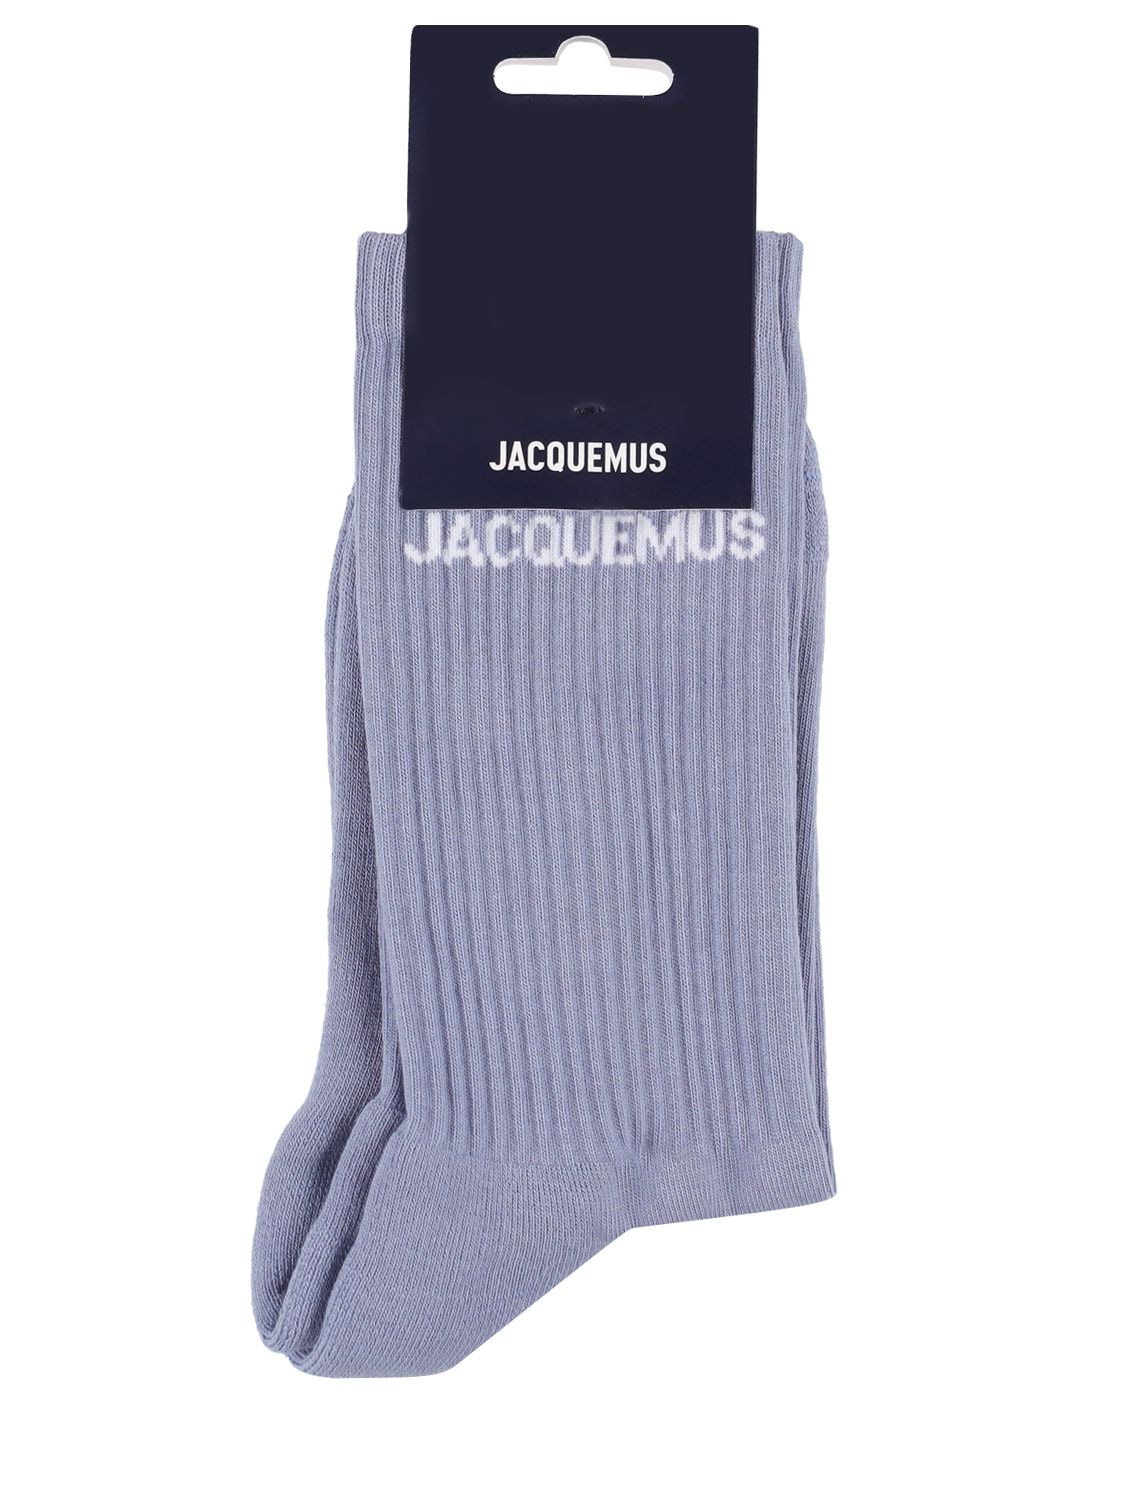 Jacquemus Les Chaussettes Cotton Blend Socks In Light Blue